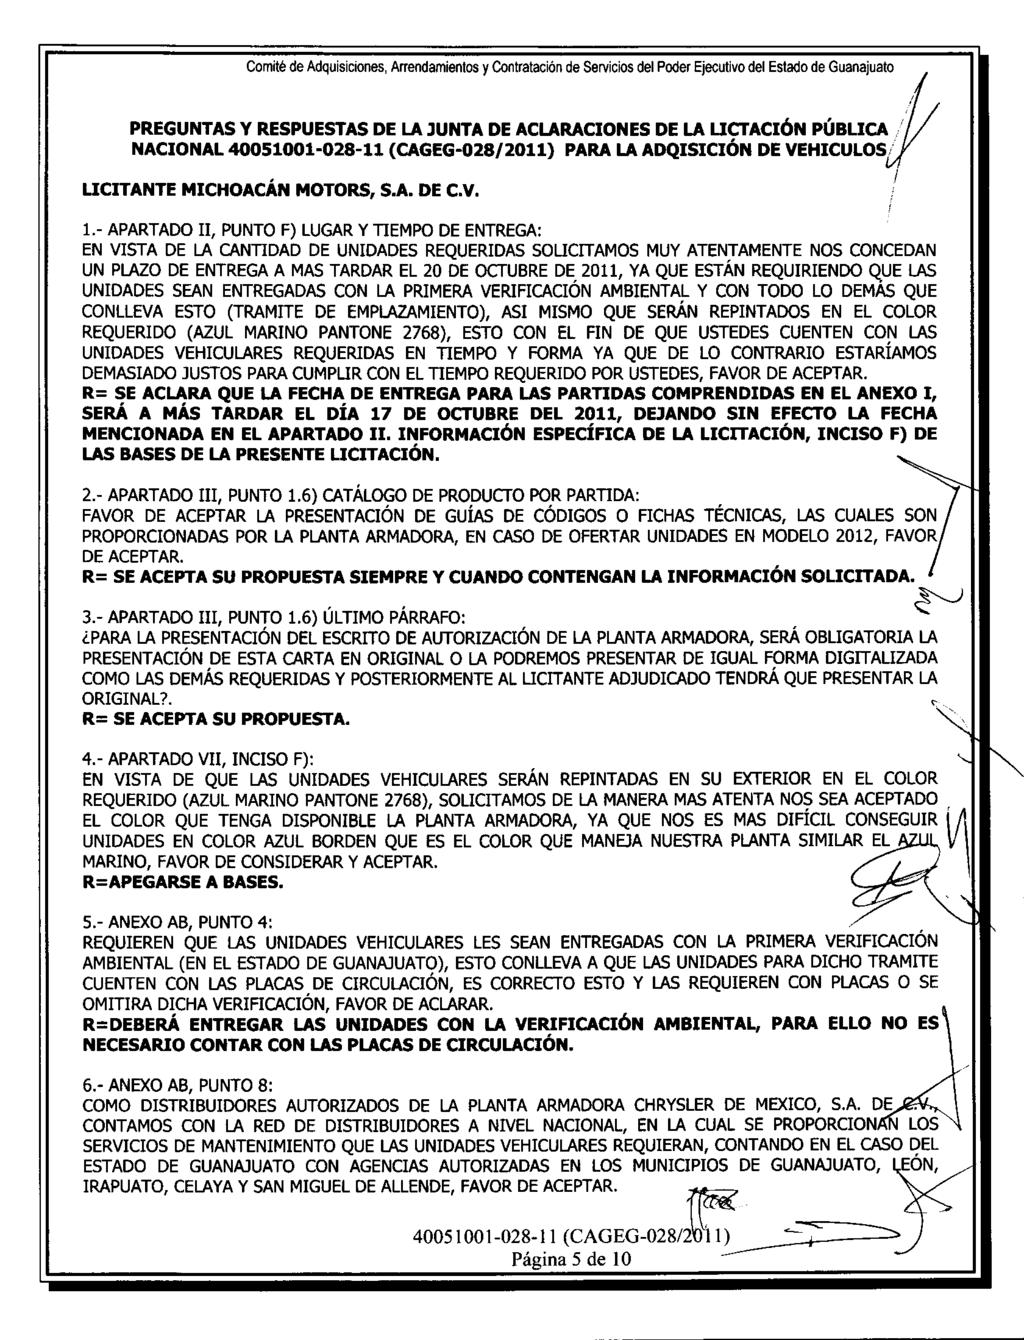 Comite de Adquisiciones, Anendamientos y Contrataci6n de Servicios del Poder Ejecutivo del Estado de Guanajuato PREGUITITAS Y RESPUESTAS DE LA JUNTA DE ACLARACIONES DE LA LICTACI6N POBLICA.